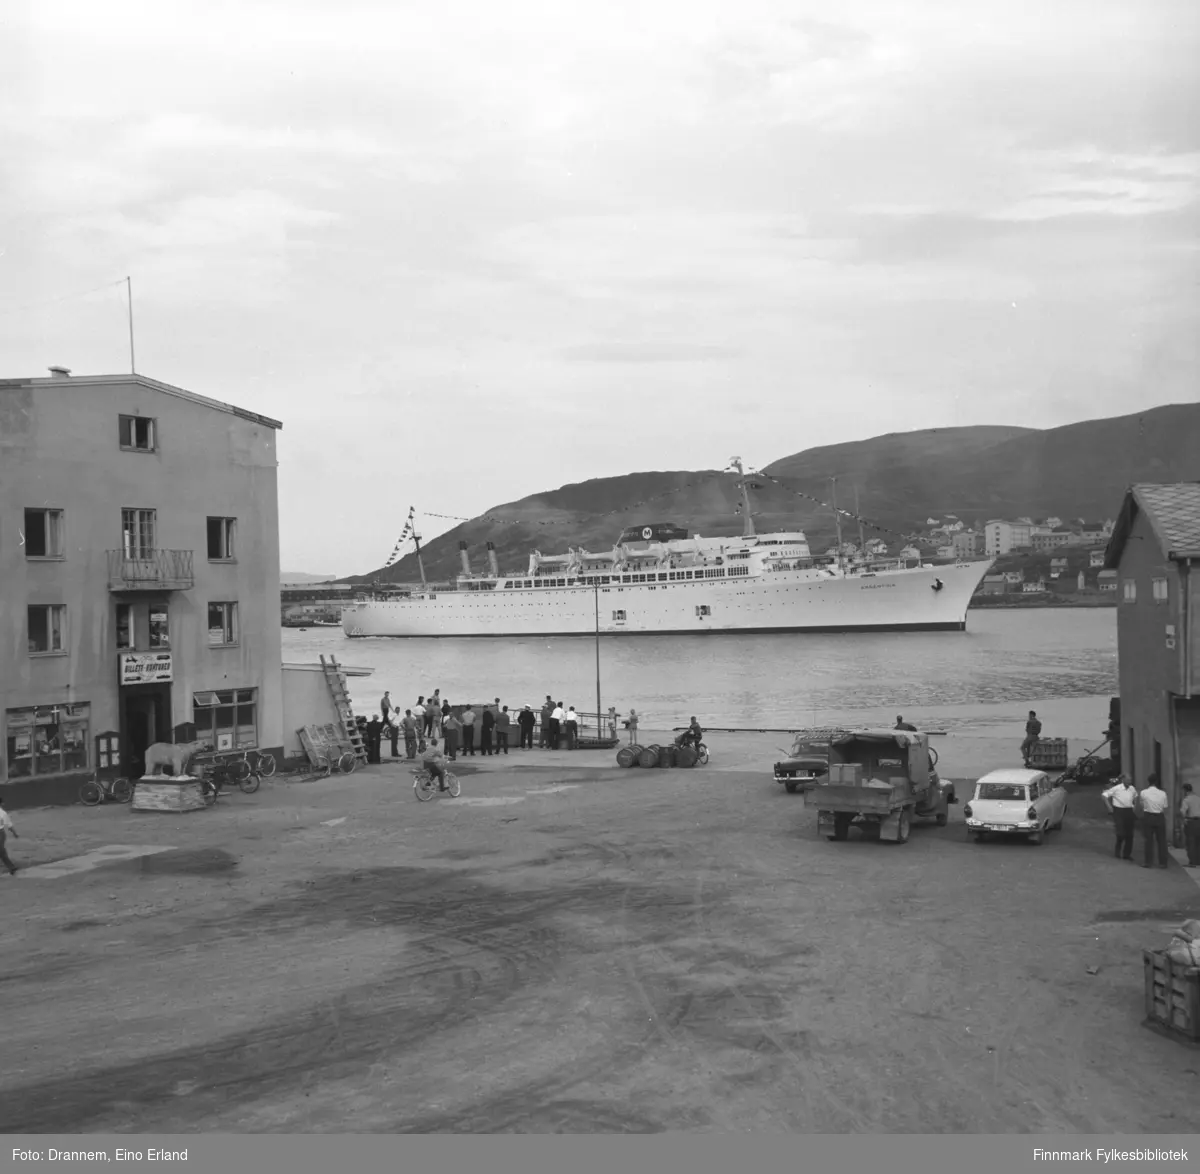 Turistskipet Moore-McCormack Lines (T-S/S turbo dampfartøy), Argentina nærmer seg Hammerfest havn. Utstoppet isbjørn på sokkel ute til venstre, hvit Ford Taunus 17M stasjonsvogn 1958-1960 ute til høyre.